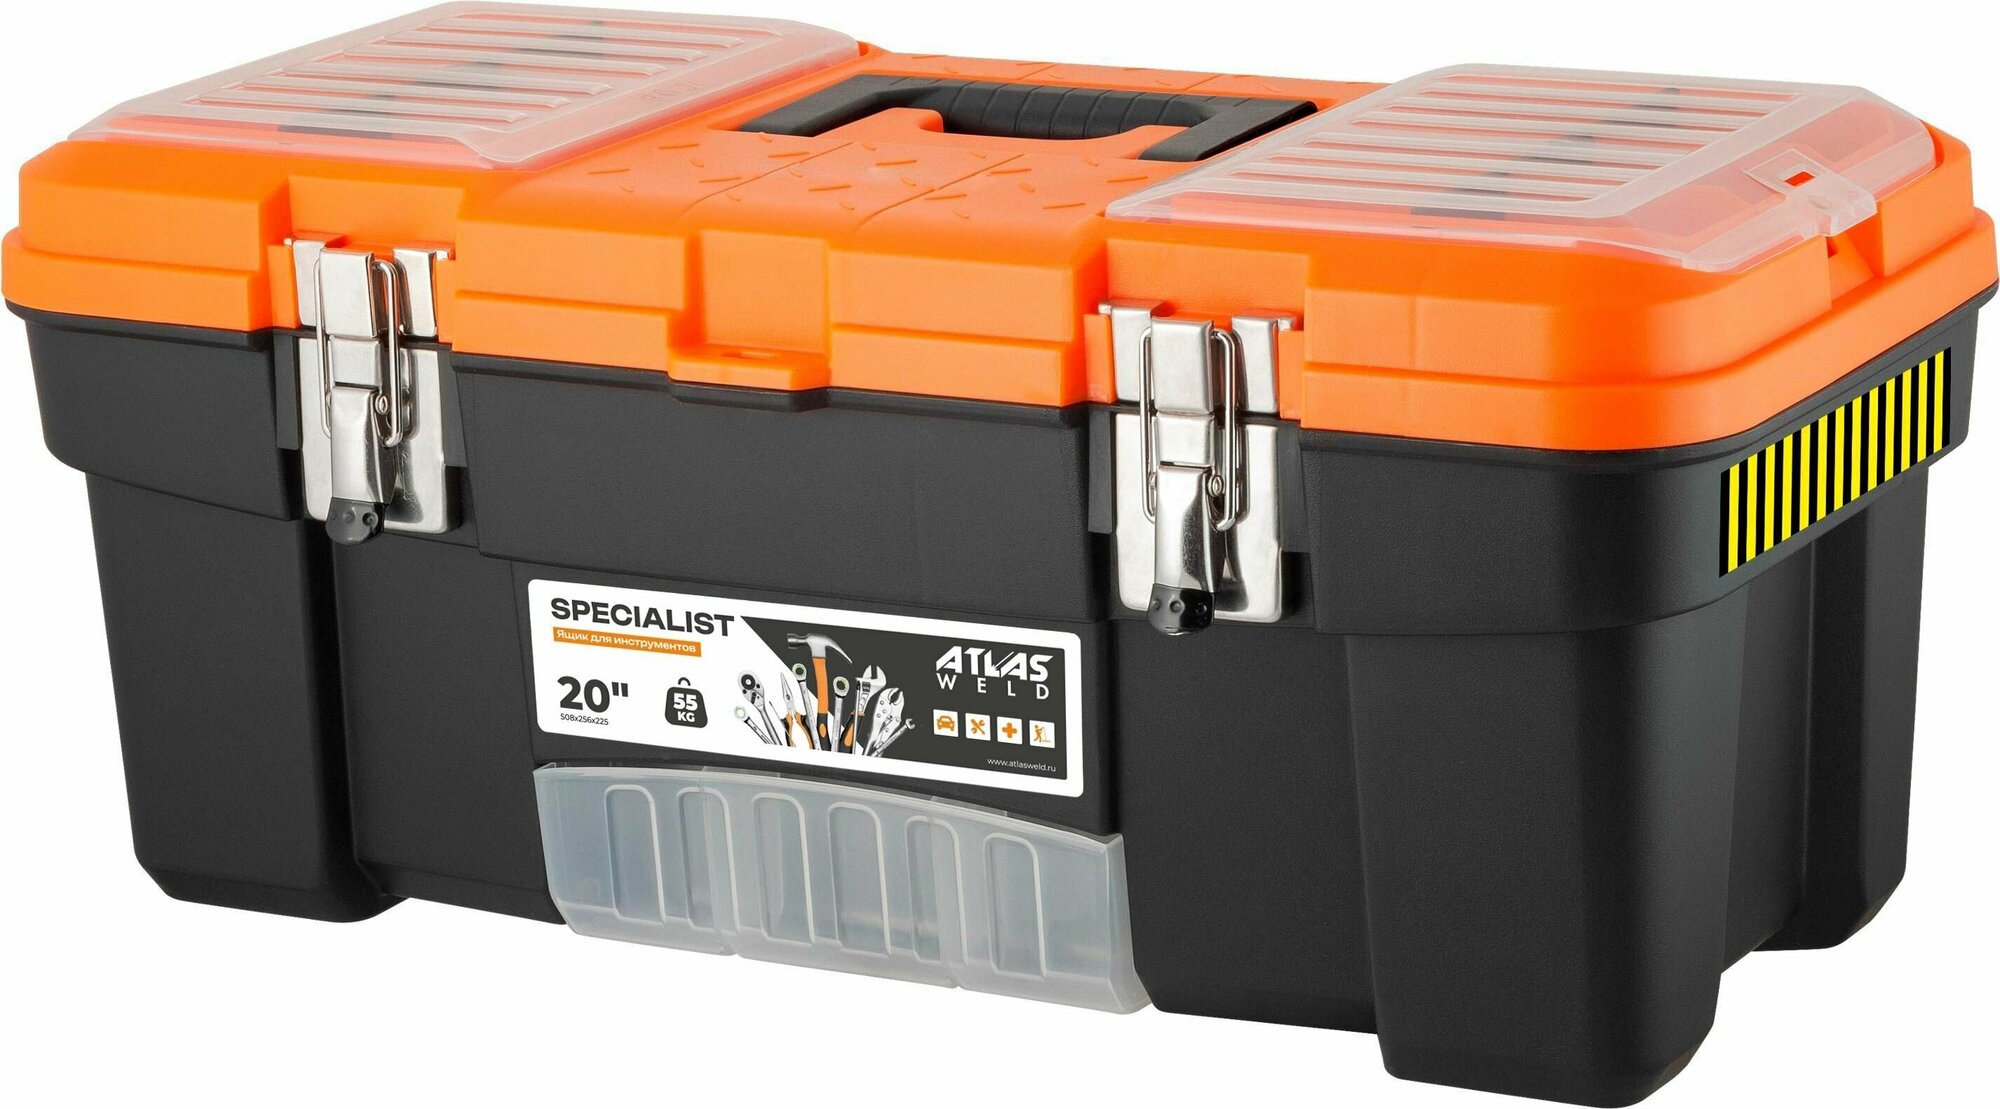 Ящик для инструментов Specialist 20" с металлическими замками черный/оранжевый 508х256х225